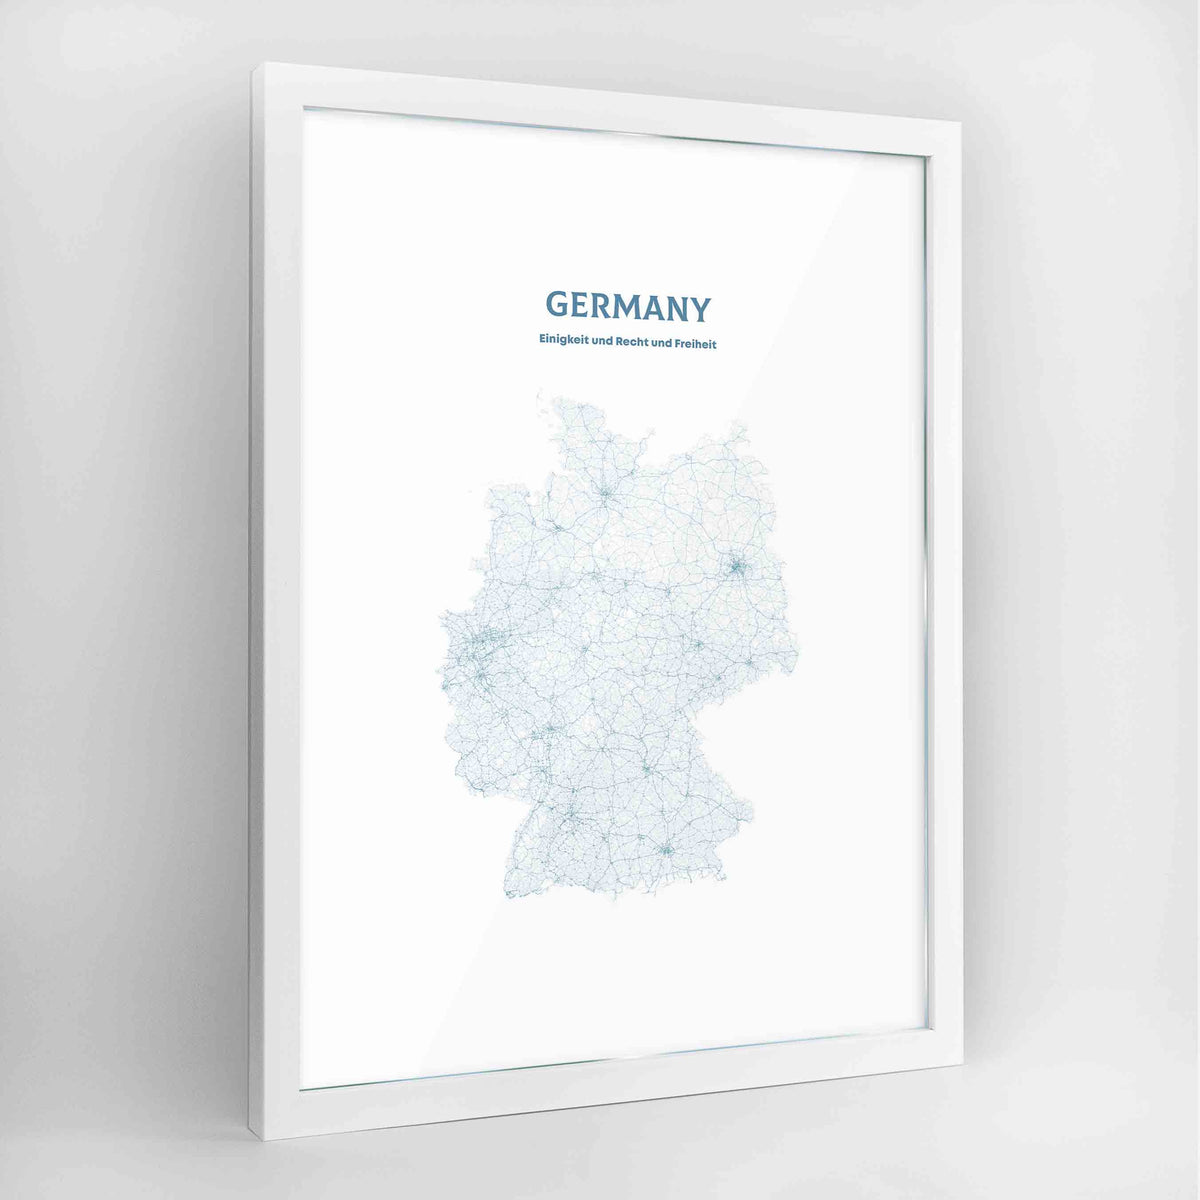 Germany - All Roads Art Print - Framed